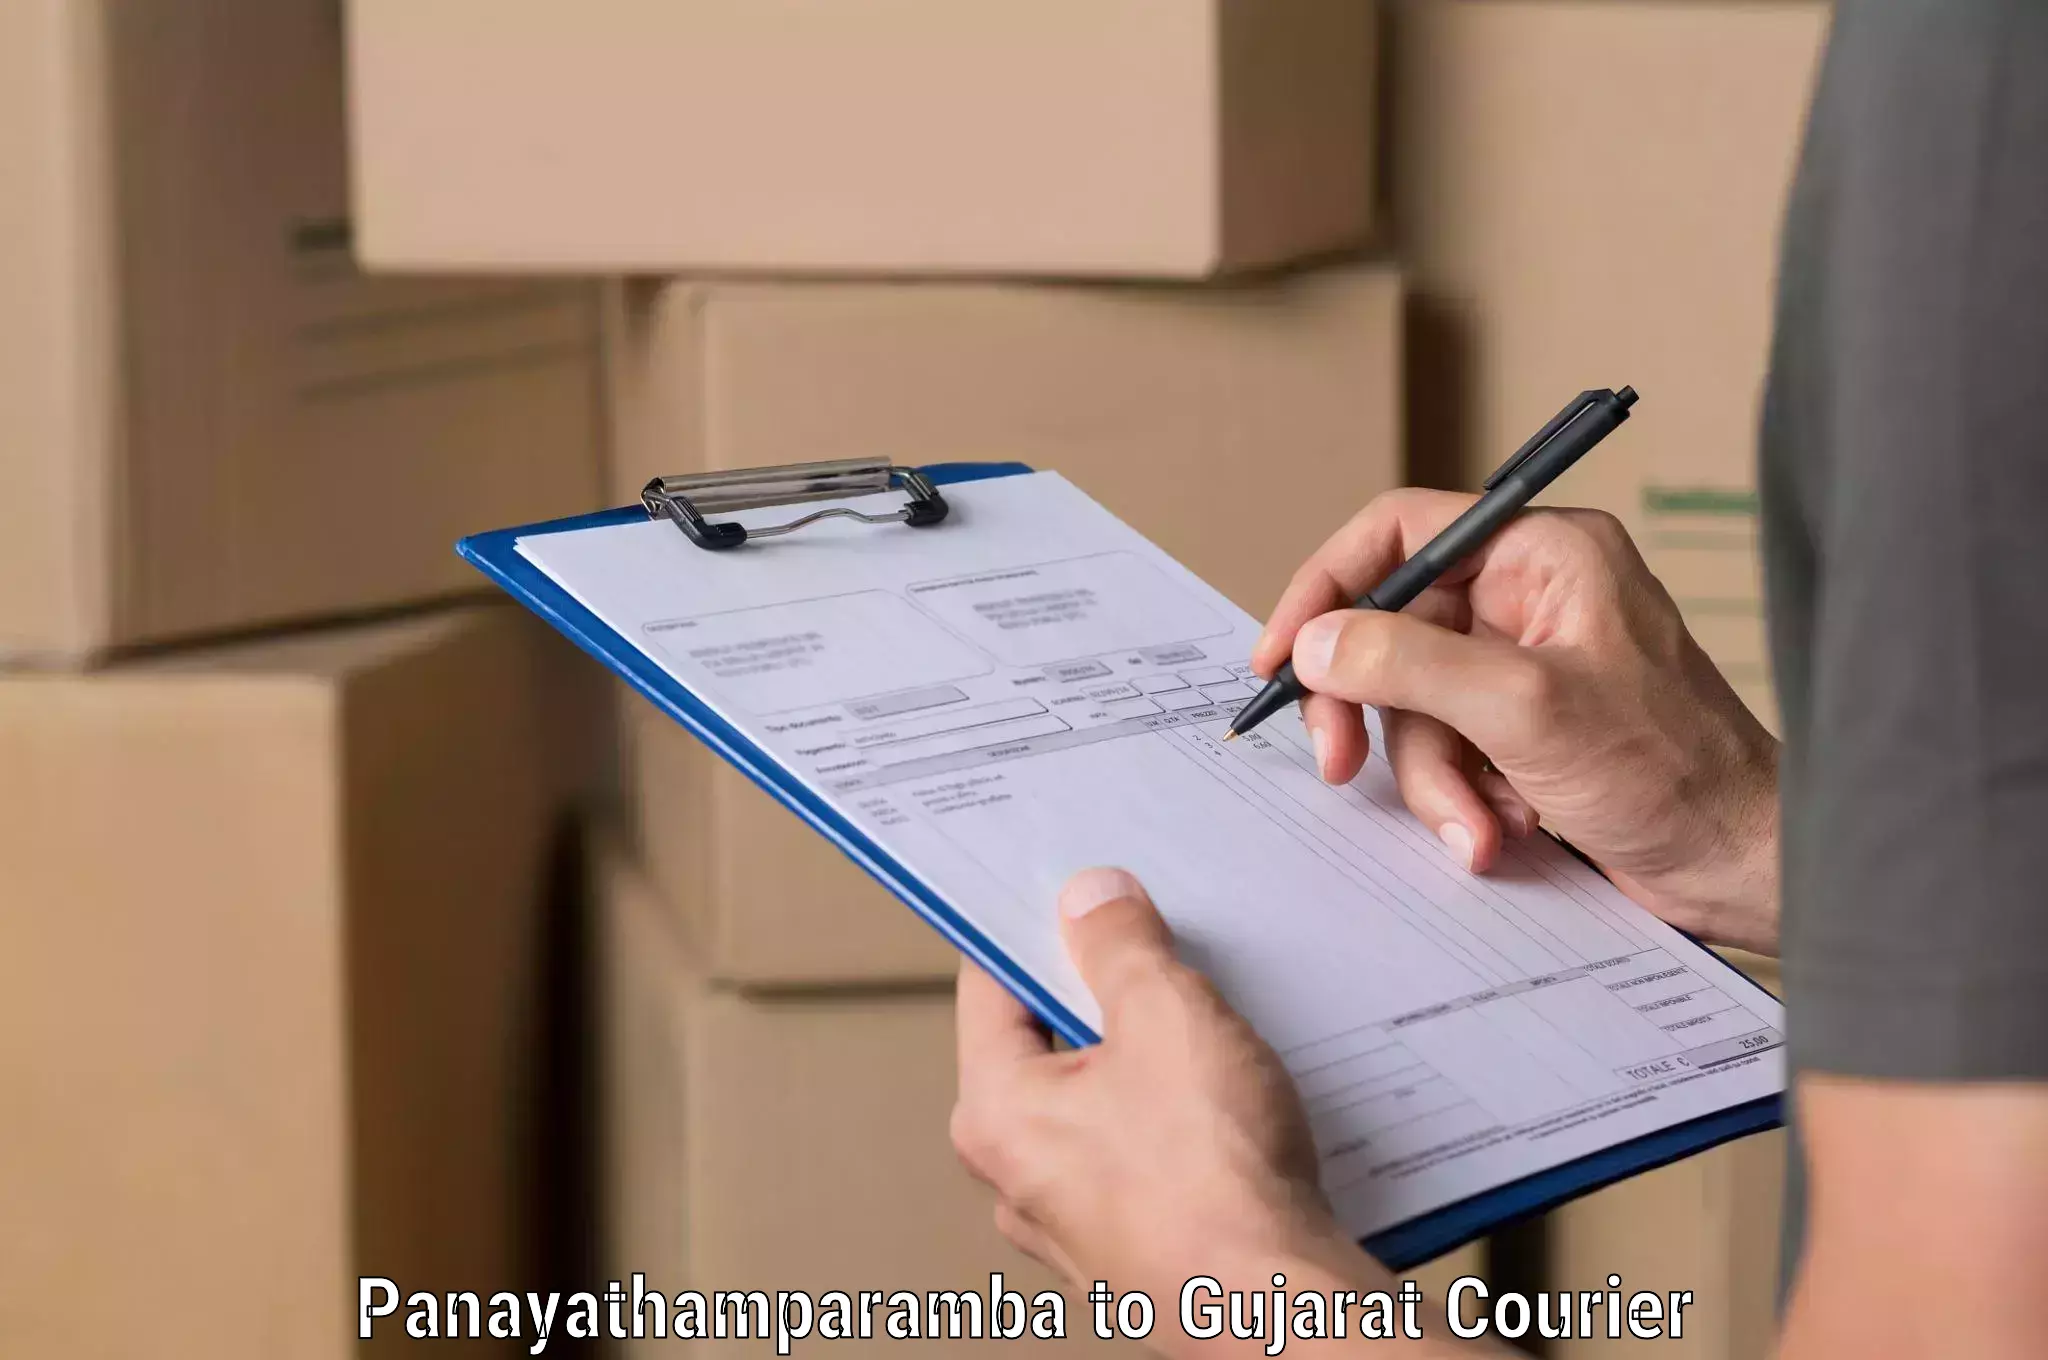 Affordable parcel service Panayathamparamba to Lunawada